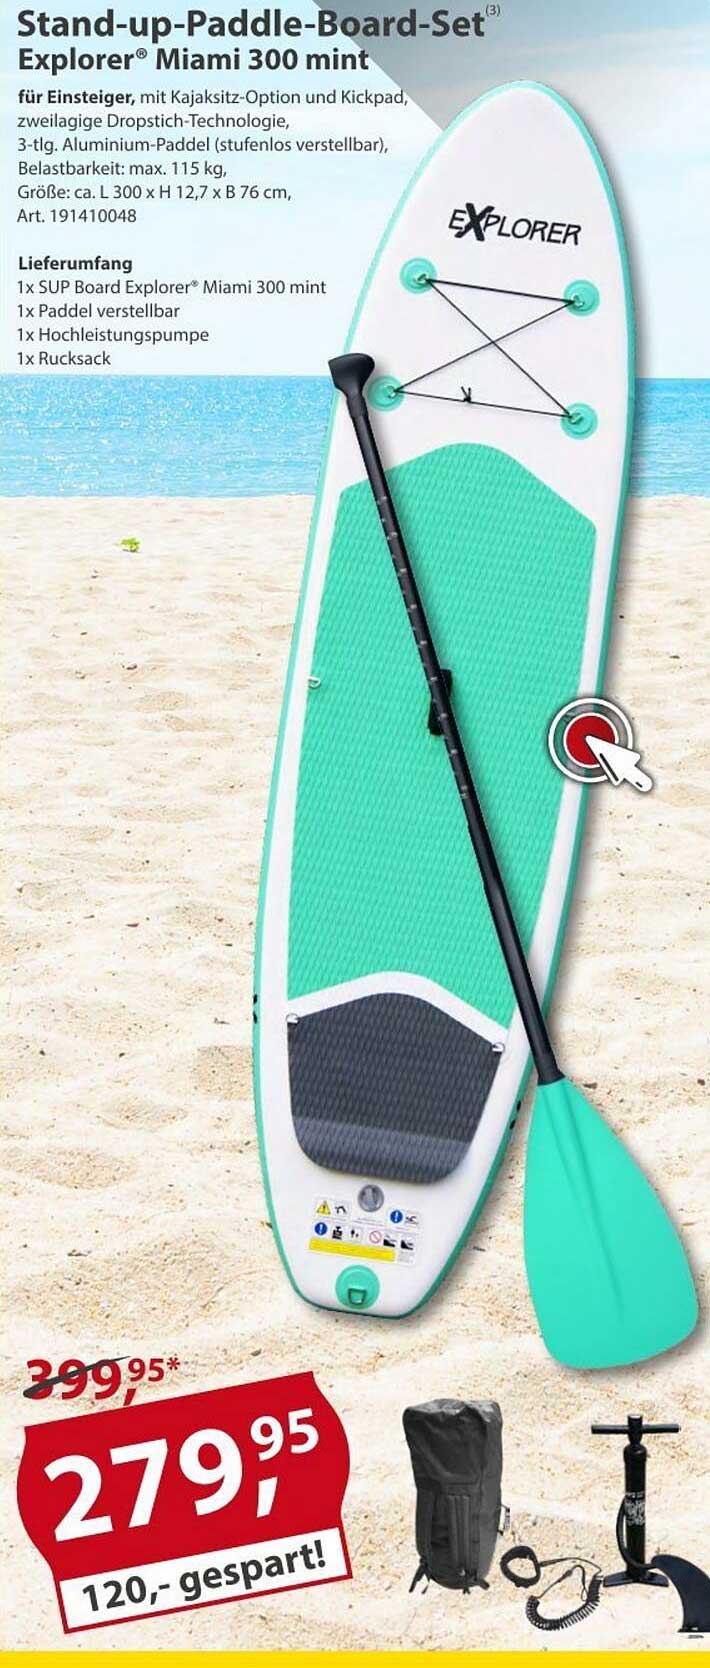 Stand-up-paddle-board-set Explorer Miami 300 Angebot Sonderpreis bei Baumarkt